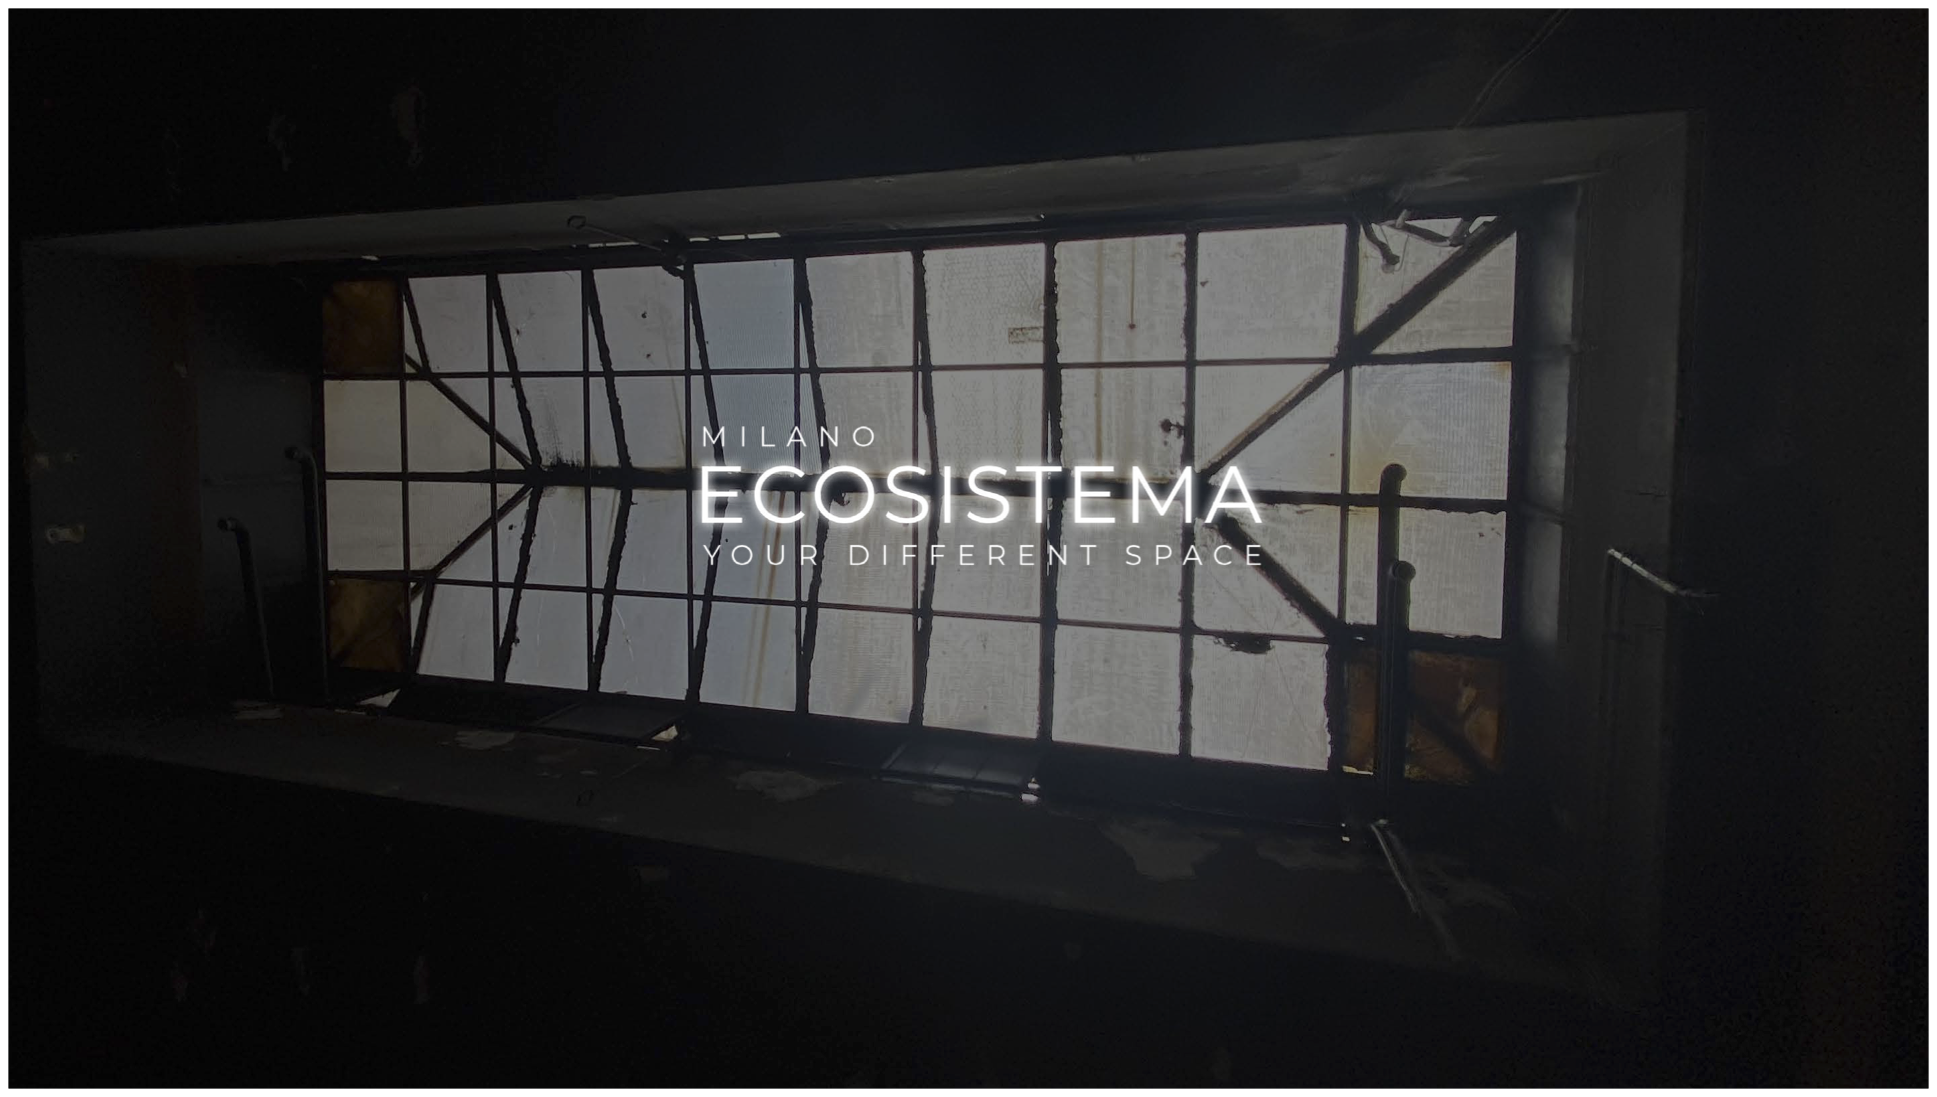 Light, sostenibilità e innovazione: LUXItalia illumina Ecosistema